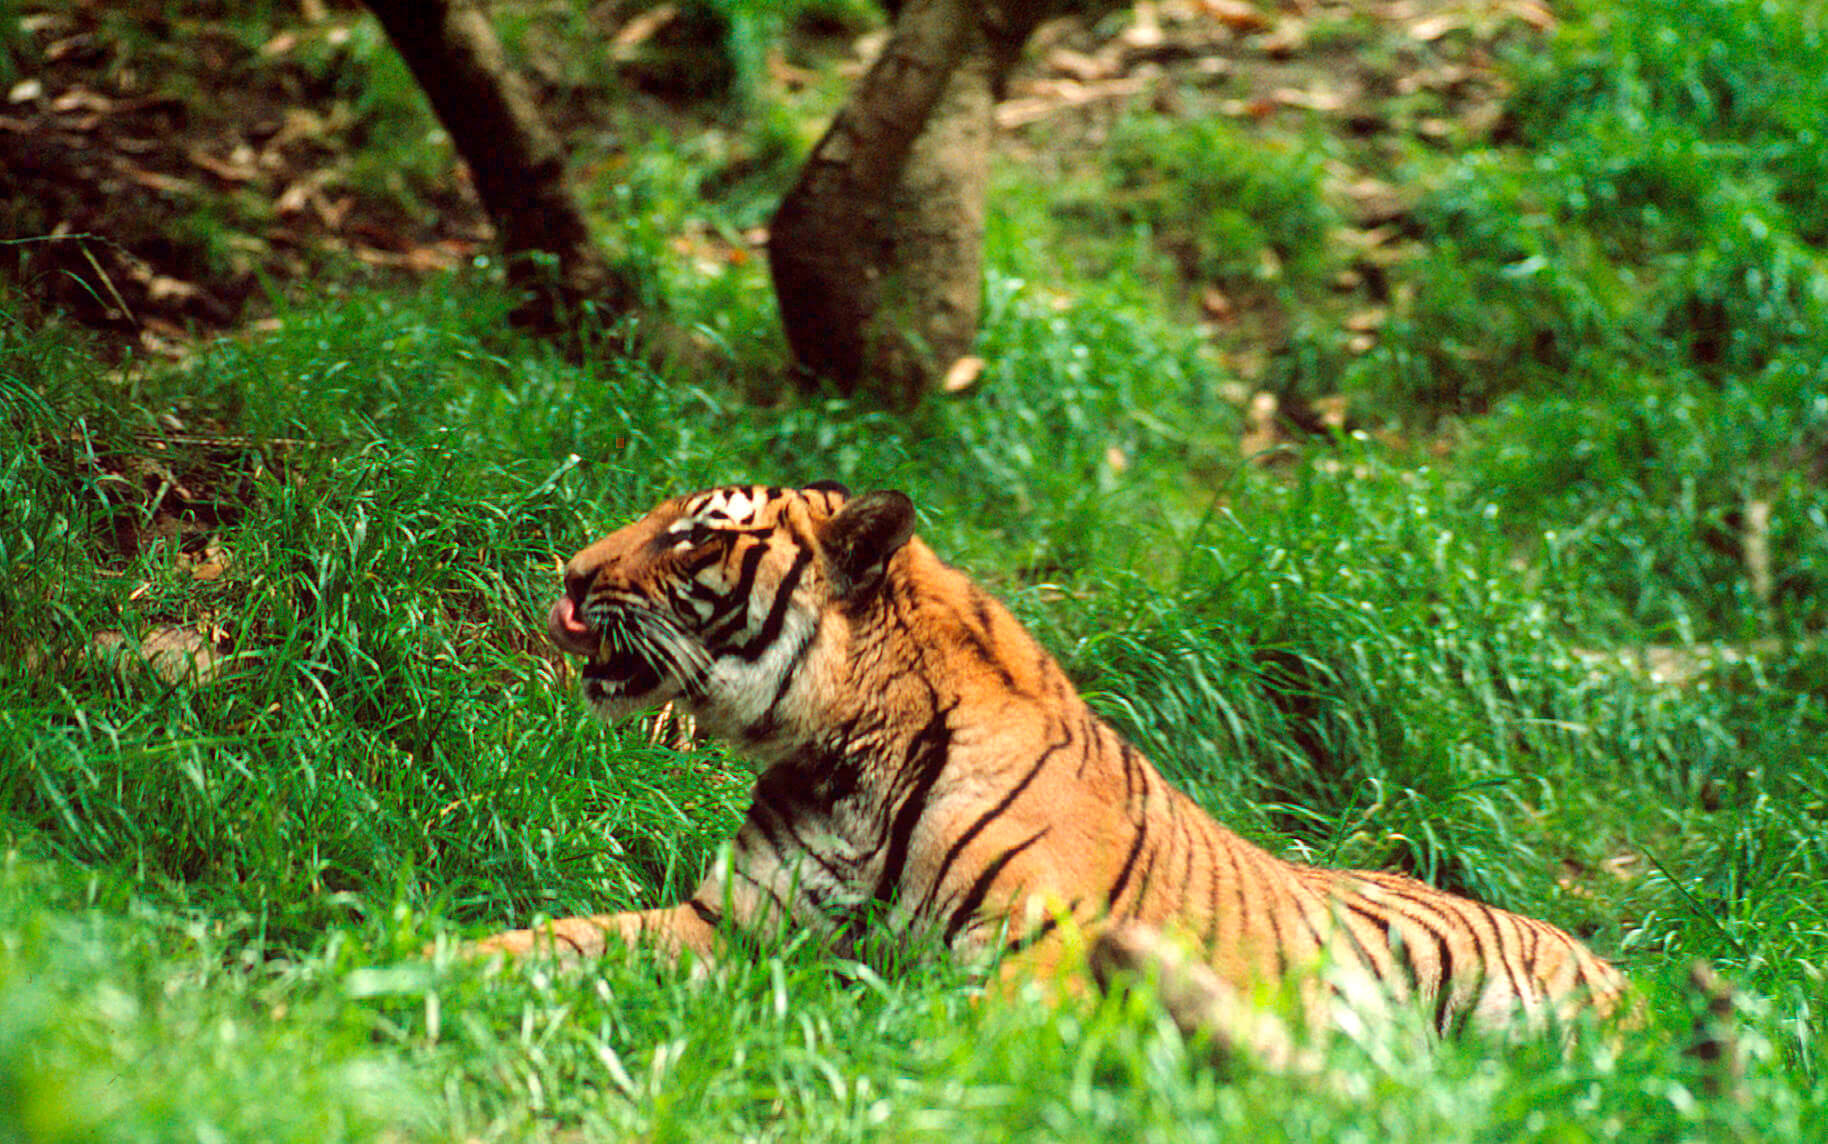 Tigre com listras marcantes descansando na vibrante grama verde, com a língua de fora.